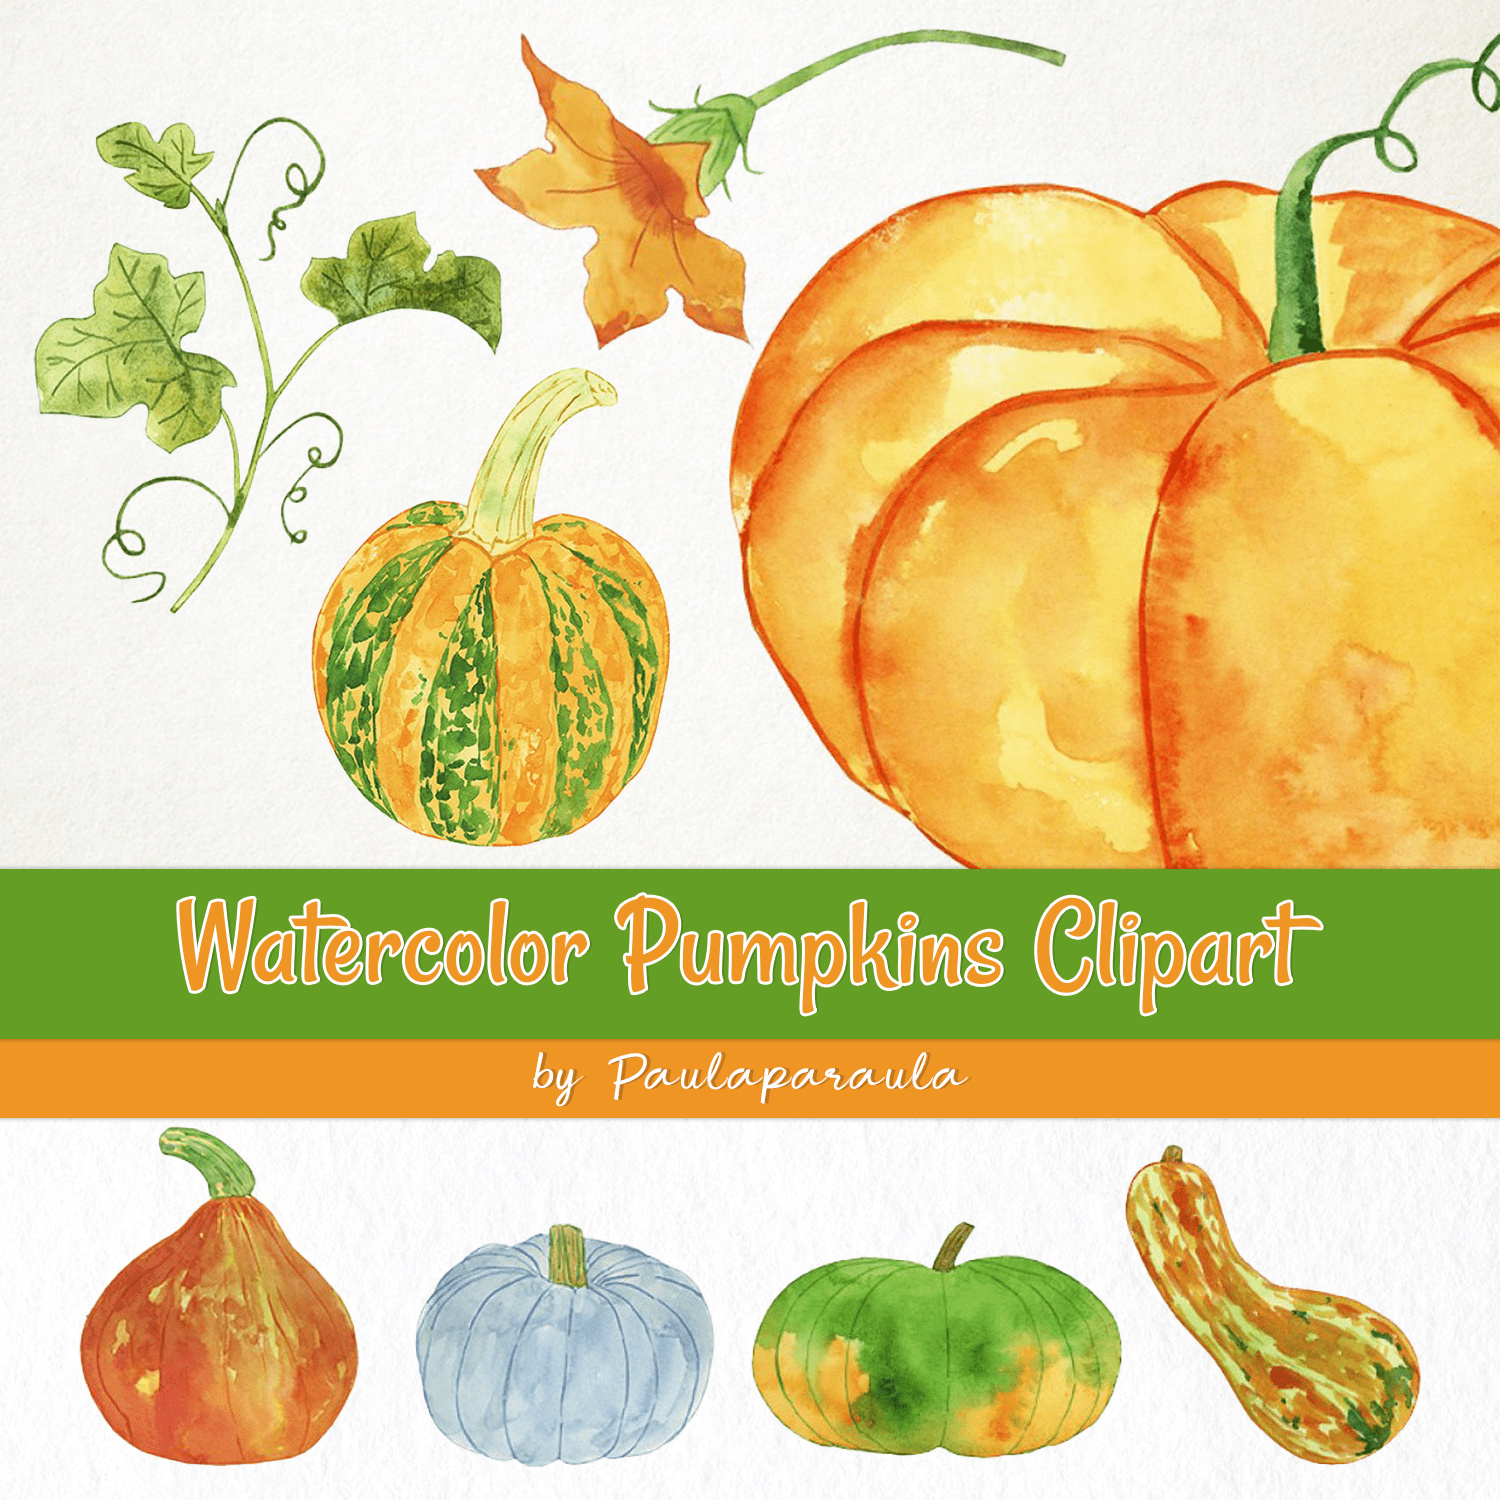 Watercolor Pumpkins Clipart cover.